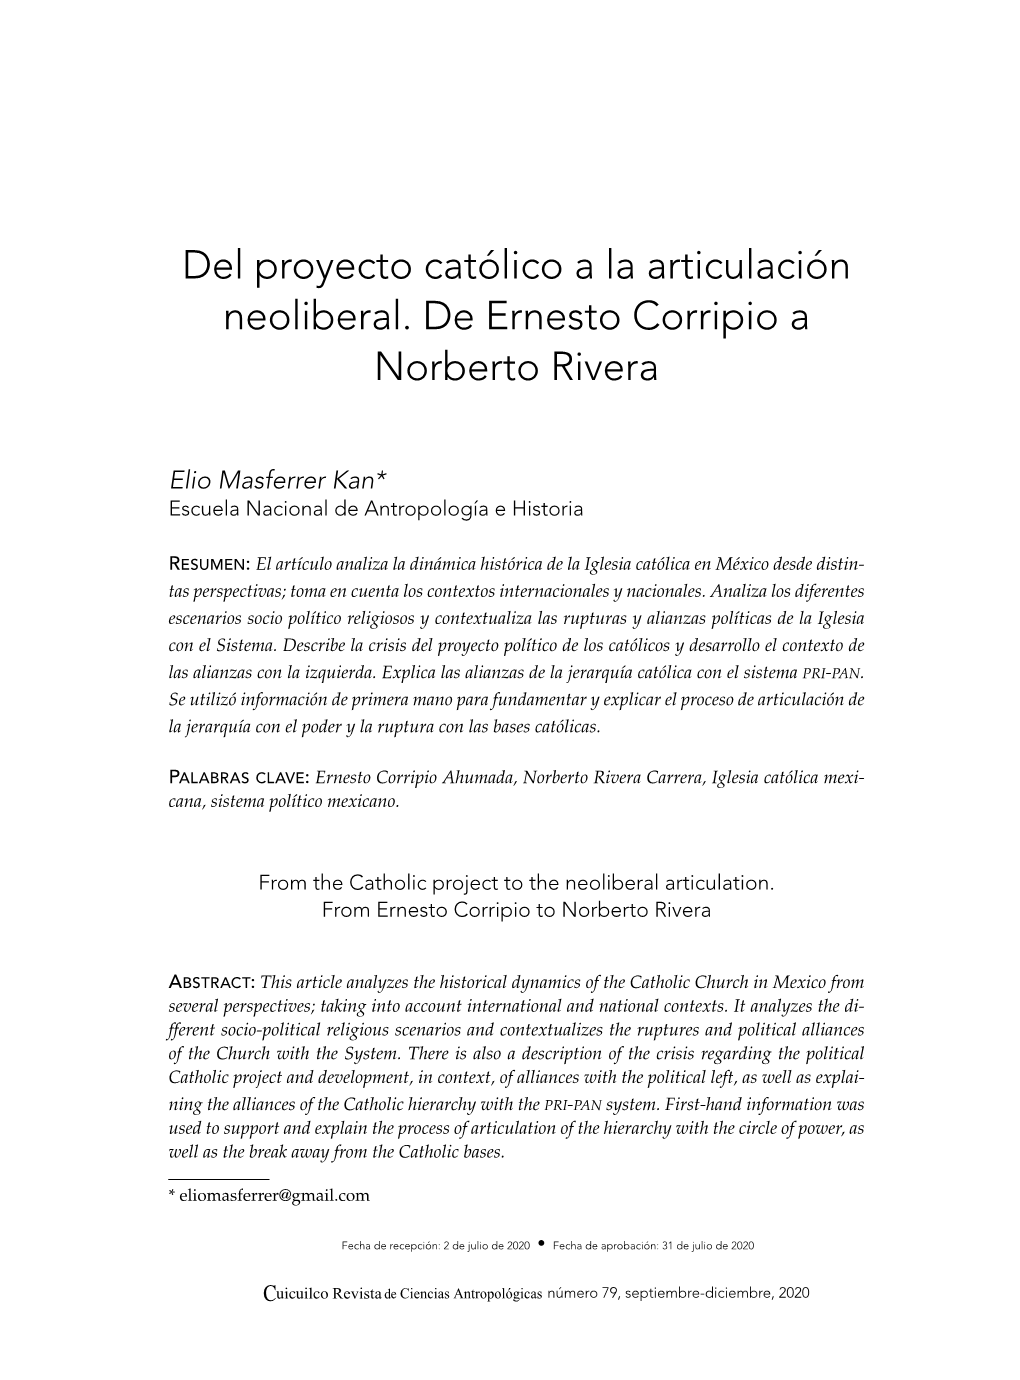 Del Proyecto Católico a La Articulación Neoliberal. De Ernesto Corripio a Norberto Rivera